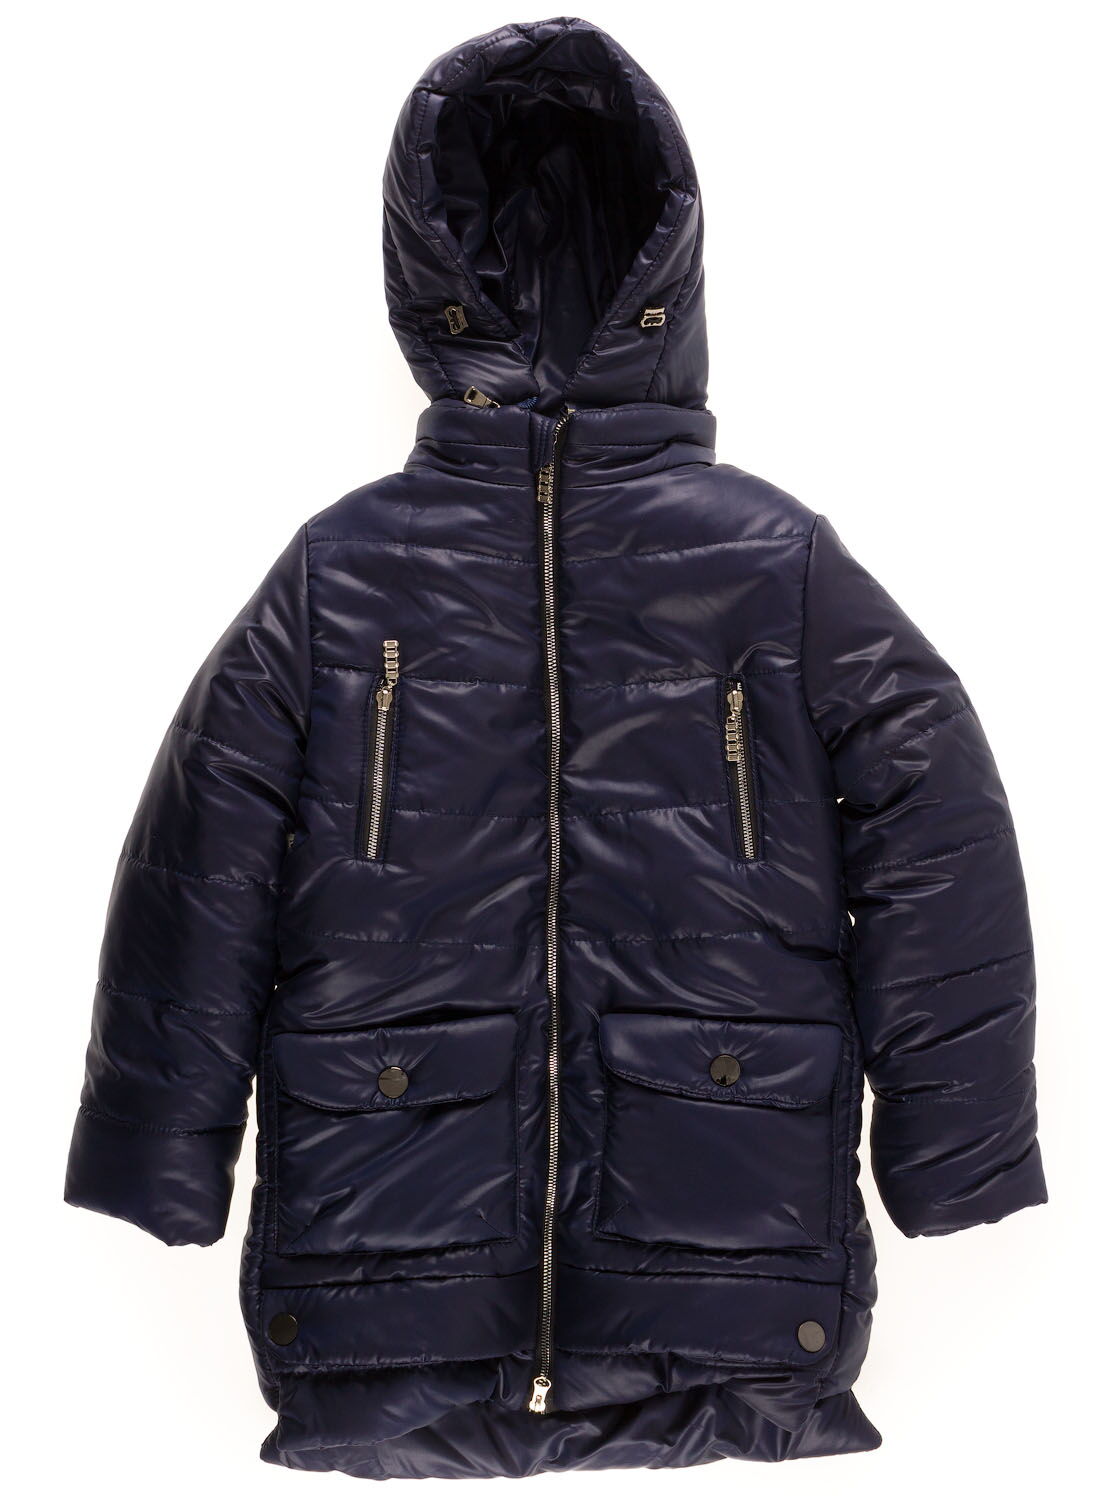 Куртка удлиненная зимняя для девочки Одягайко темно-синяя 20004О - цена